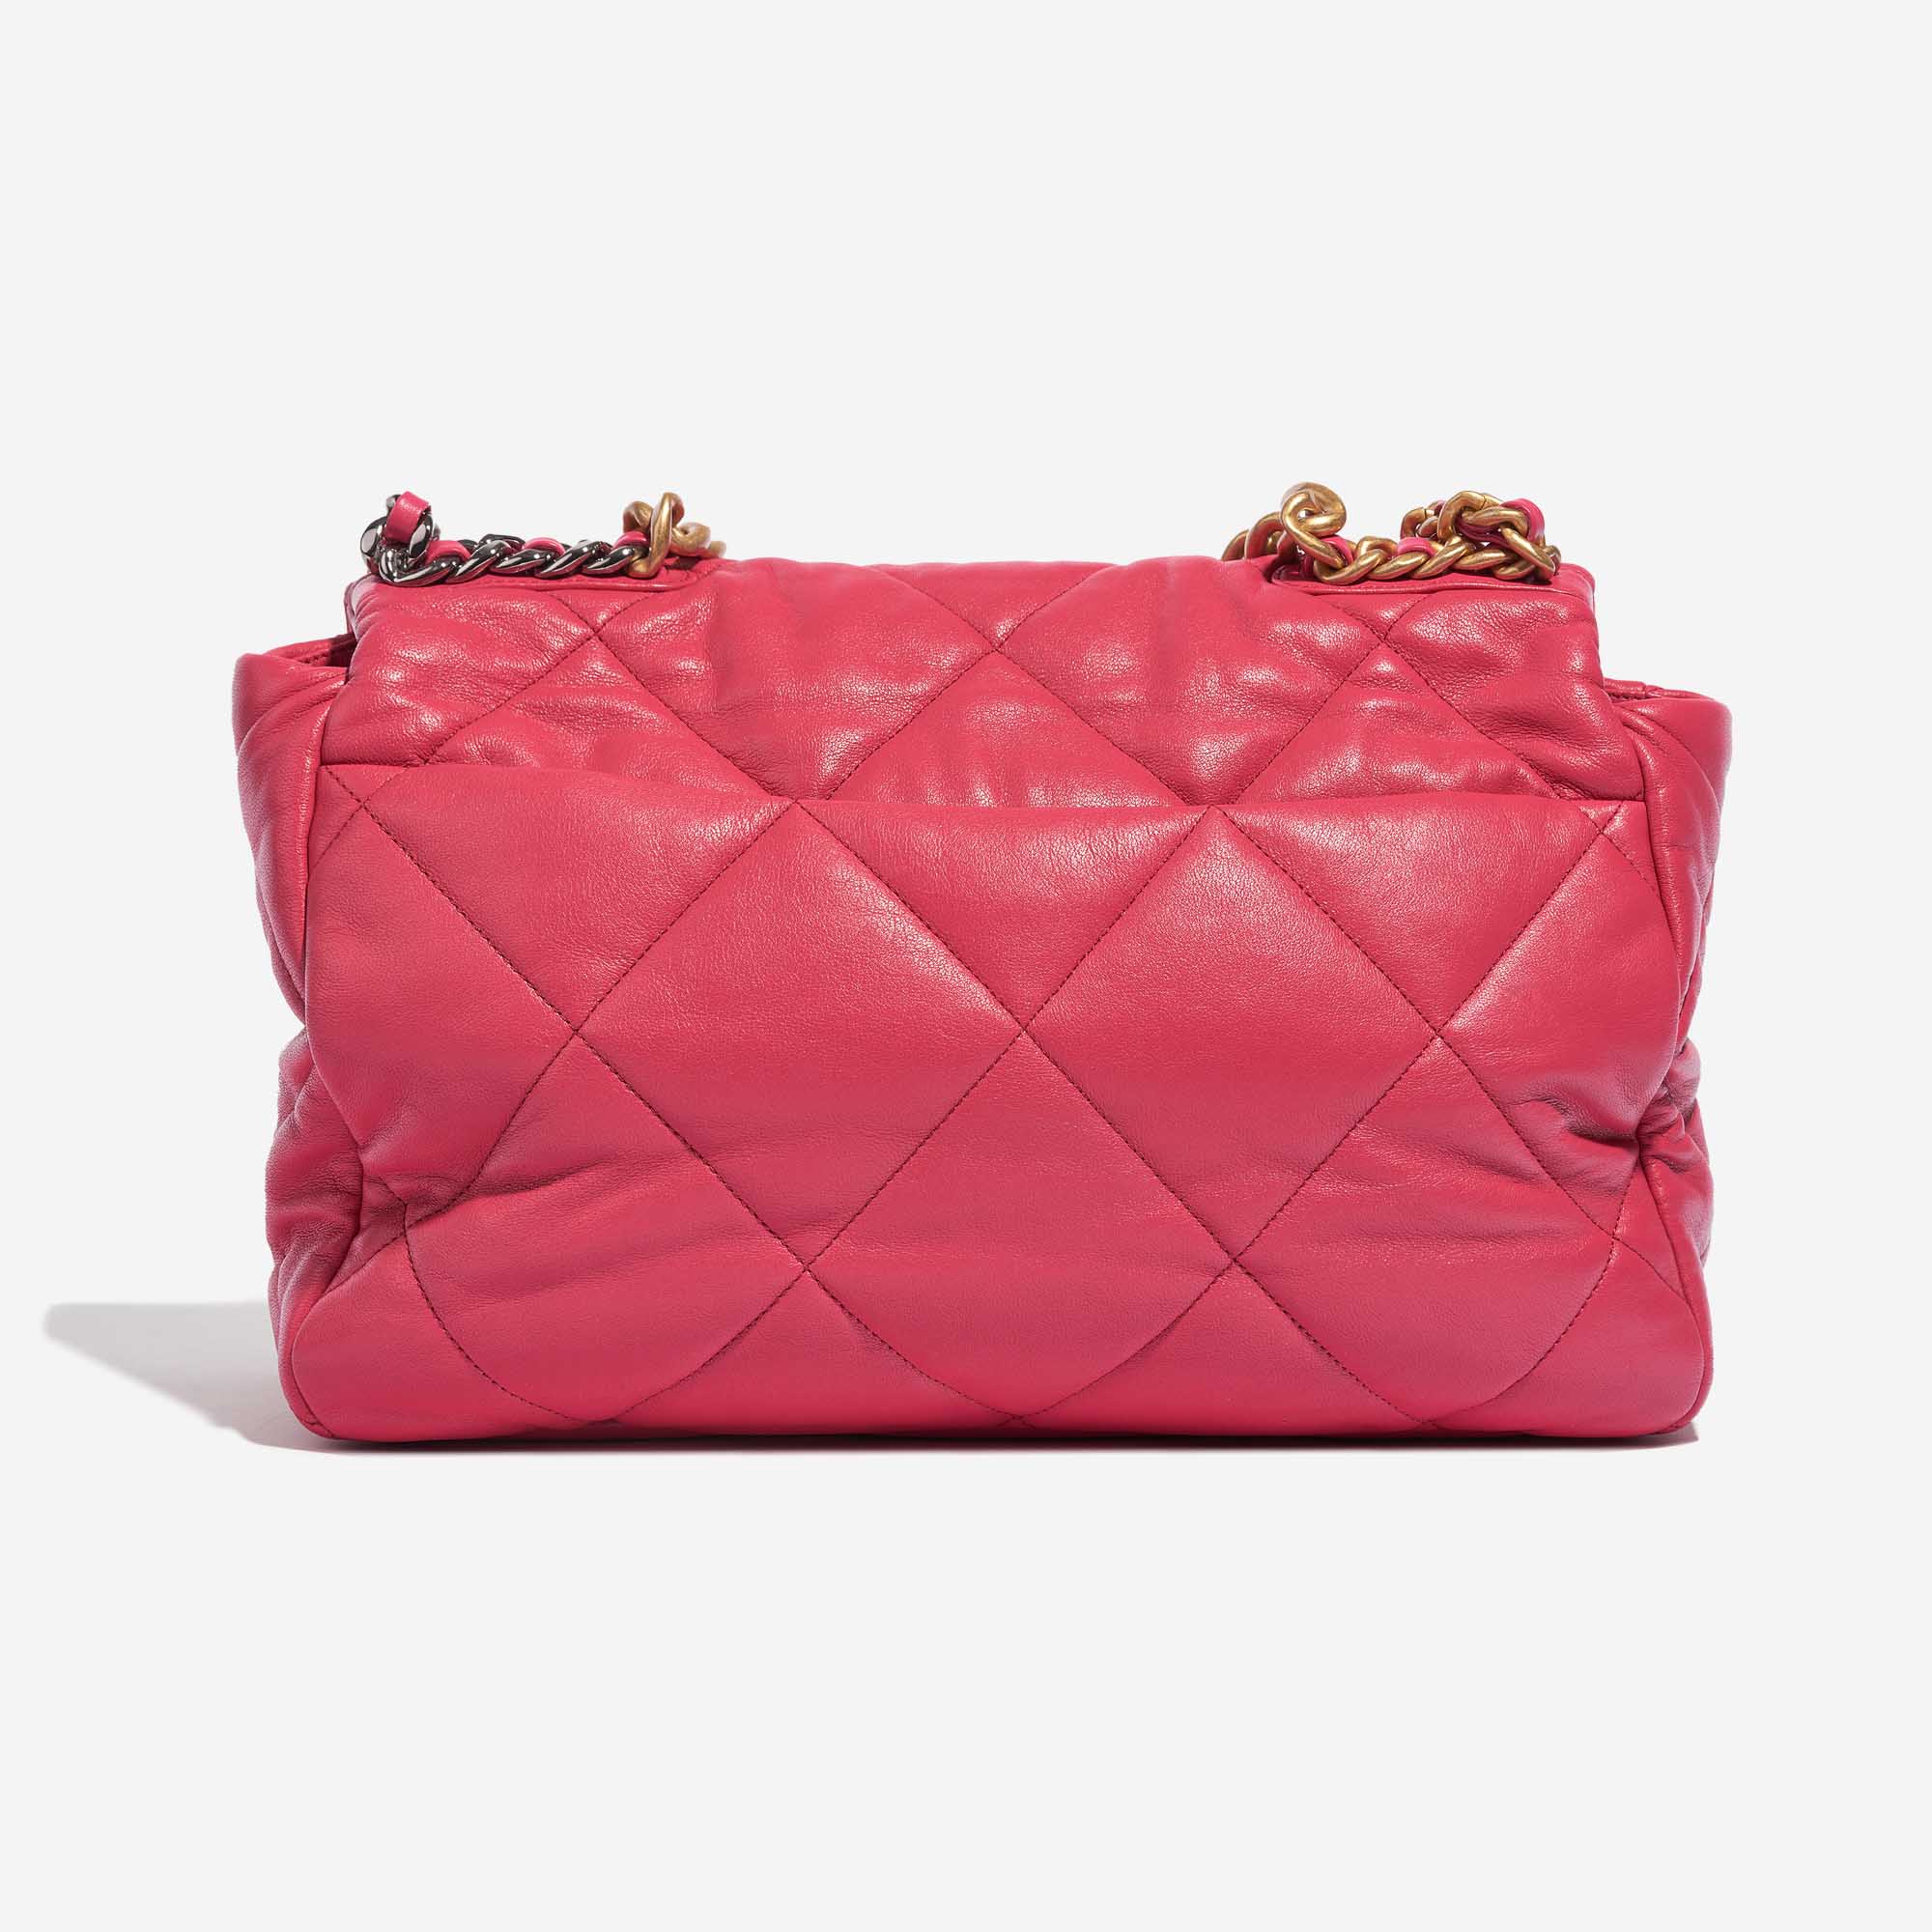 Pre-owned Chanel Tasche 19 Maxi Flap Bag Lammleder Pink Pink Back | Verkaufen Sie Ihre Designer-Tasche auf Saclab.com